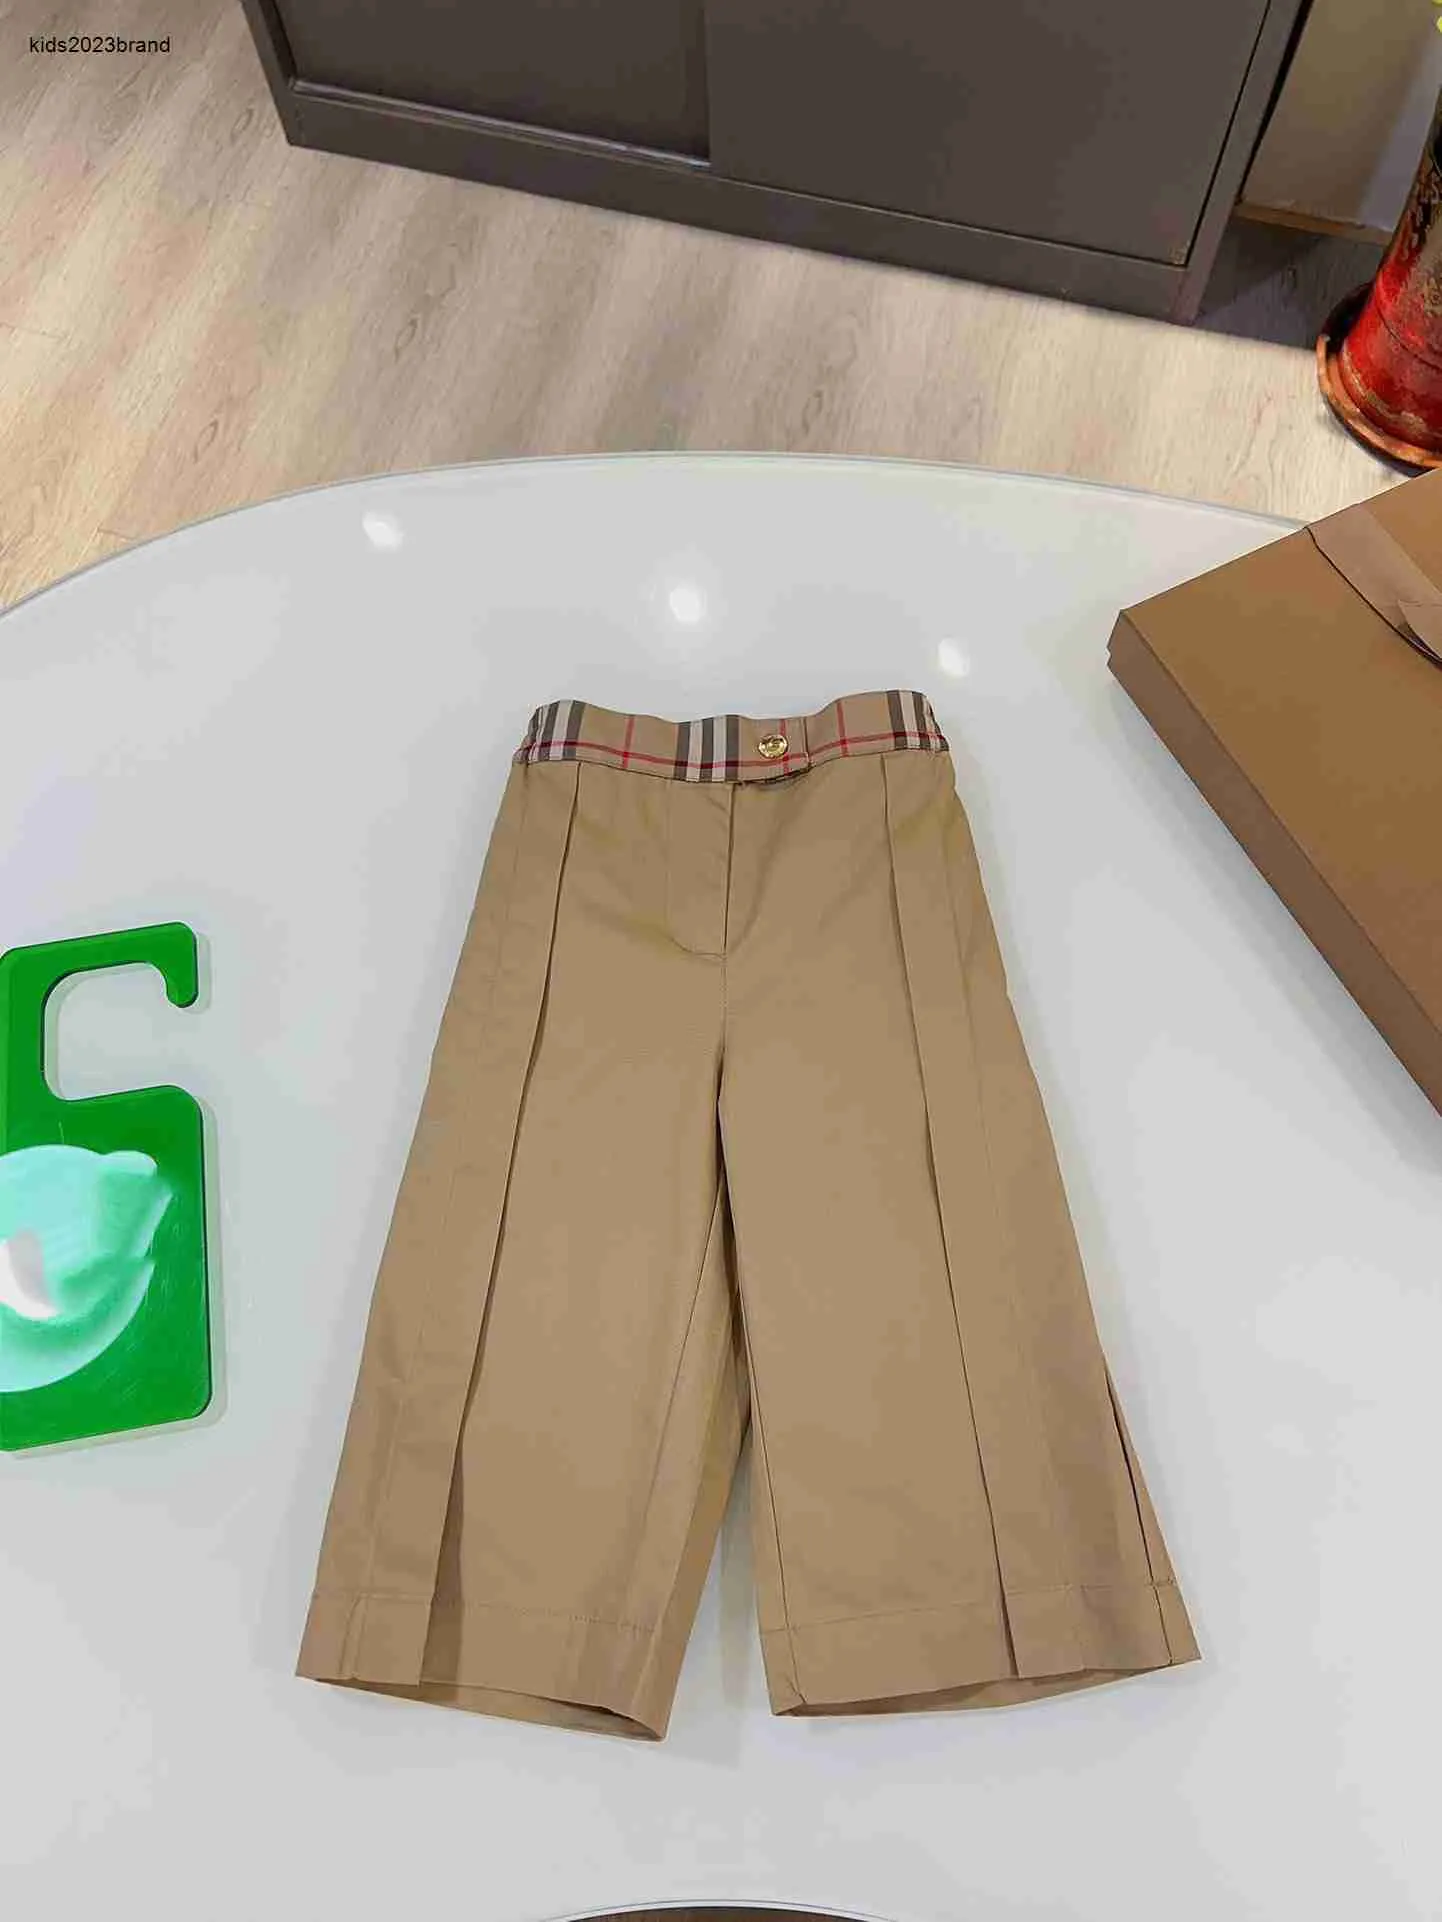 Новые брюки для детей цвета хаки, детский костюм, брюки, размер 100-160 см, детские брюки с пуговицами и молнией, 25 октября.